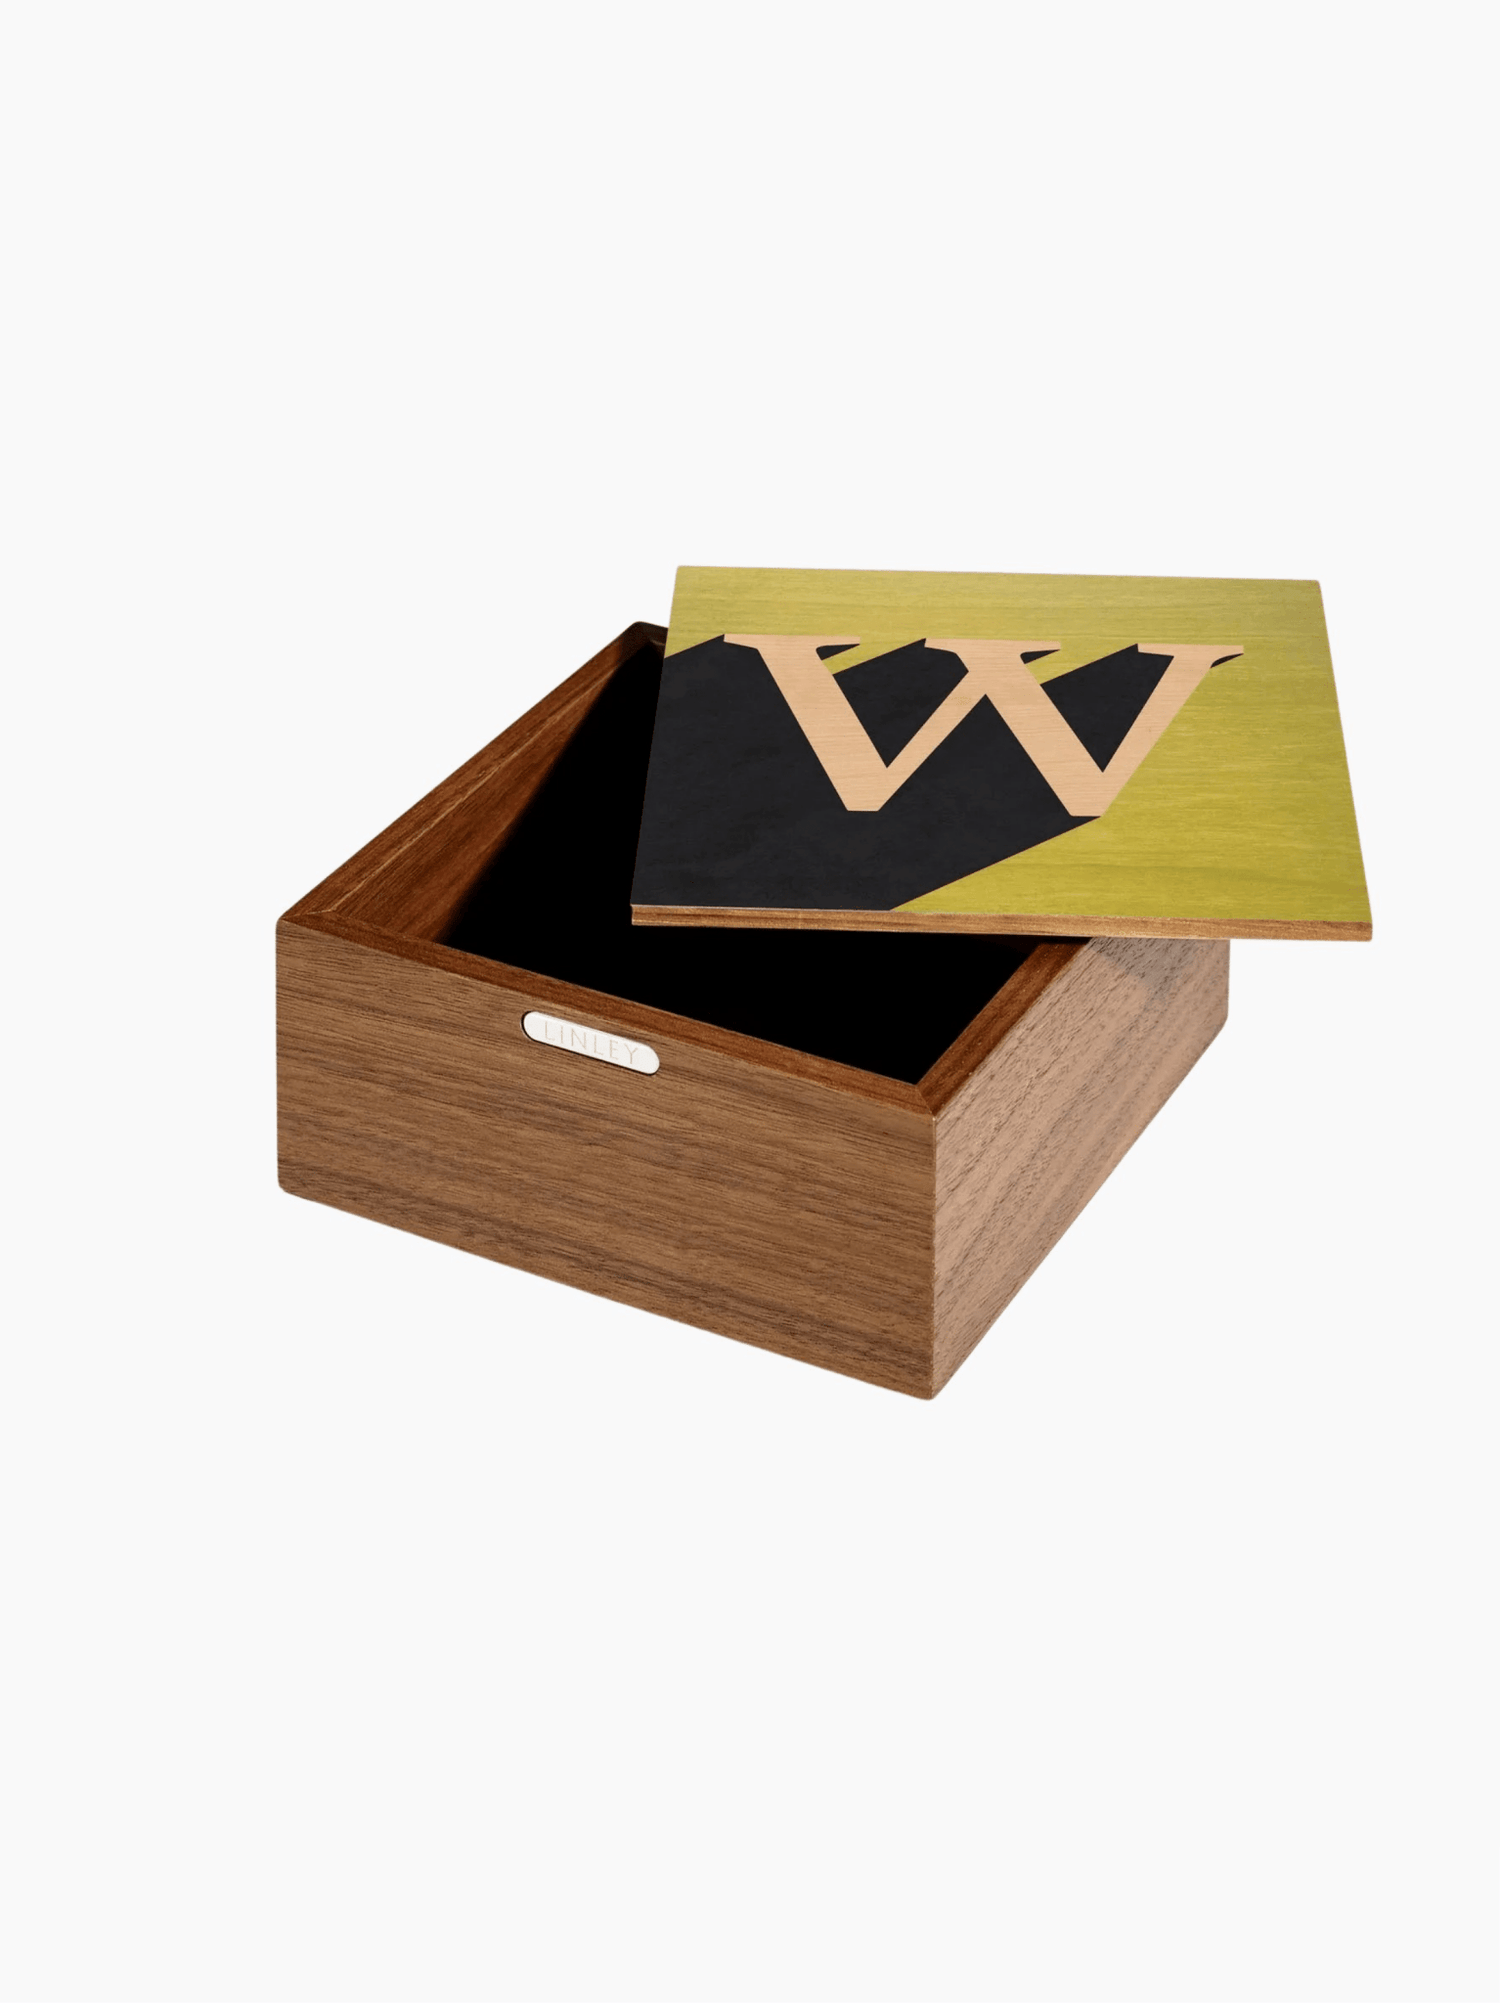 "W" Alphabet Box